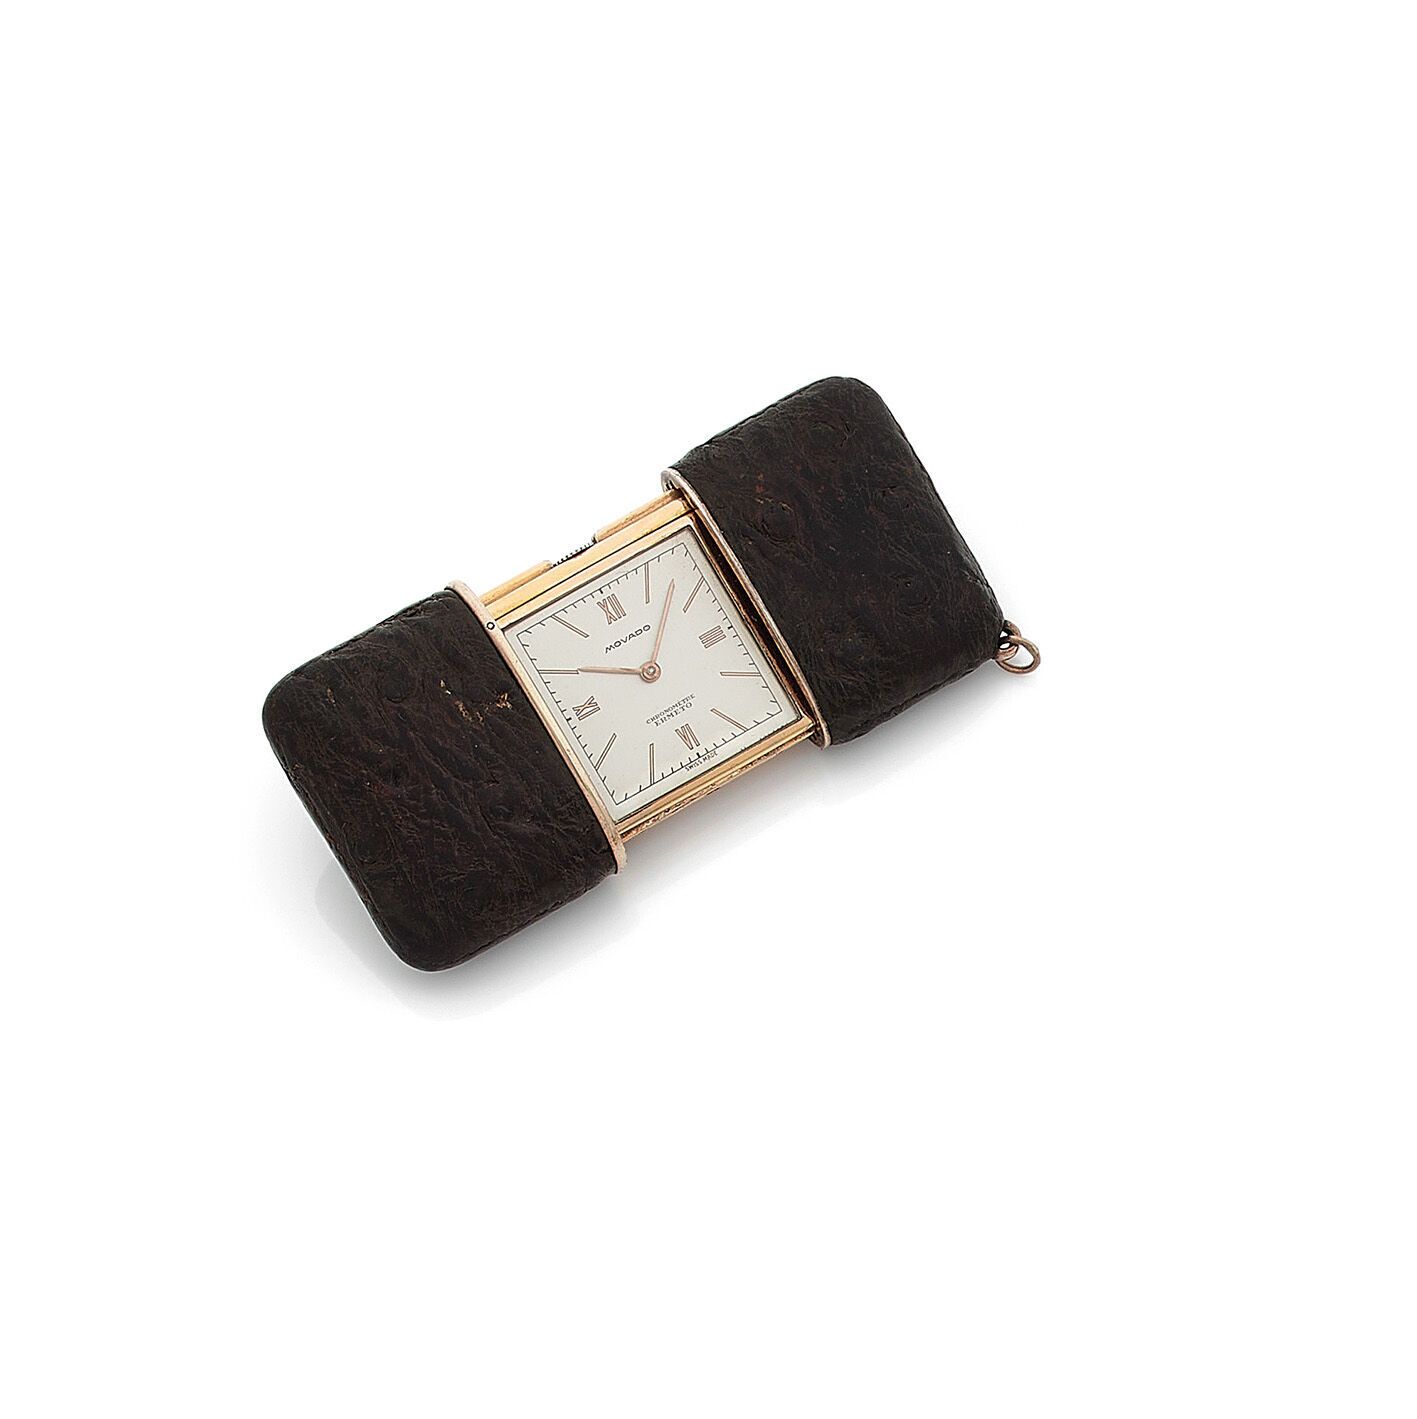 MOVADOERMETO MOVADOERMETO
Reloj de bolsillo en plata (925 milésimas) dorada, enf&hellip;